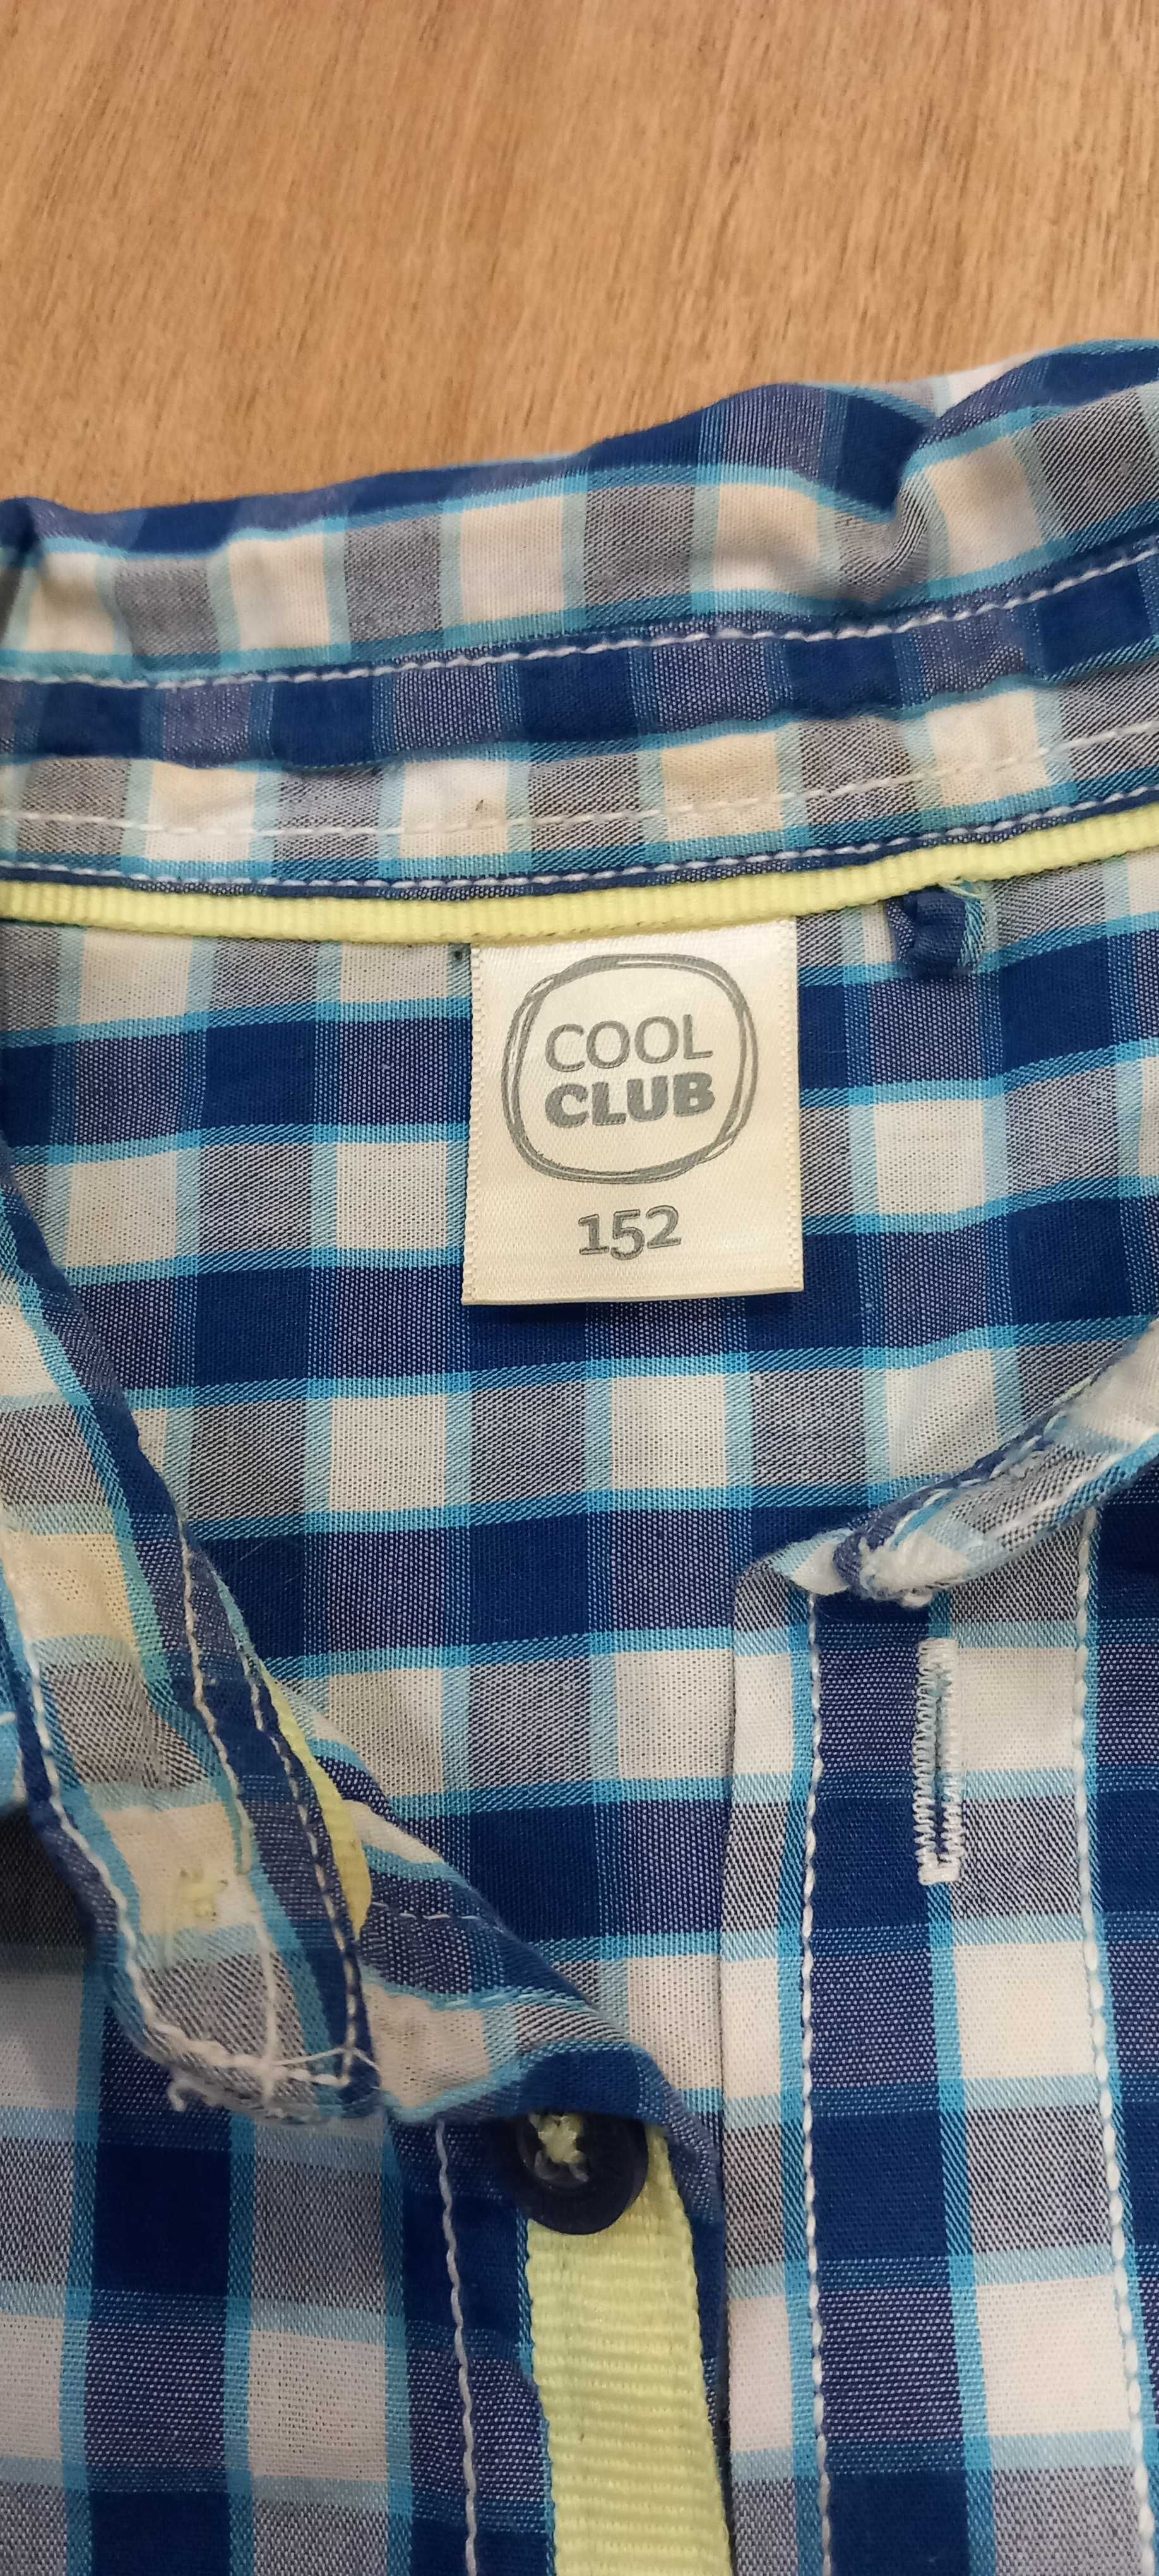 koszula chłopięca COOL CLUB, rozmiar 152